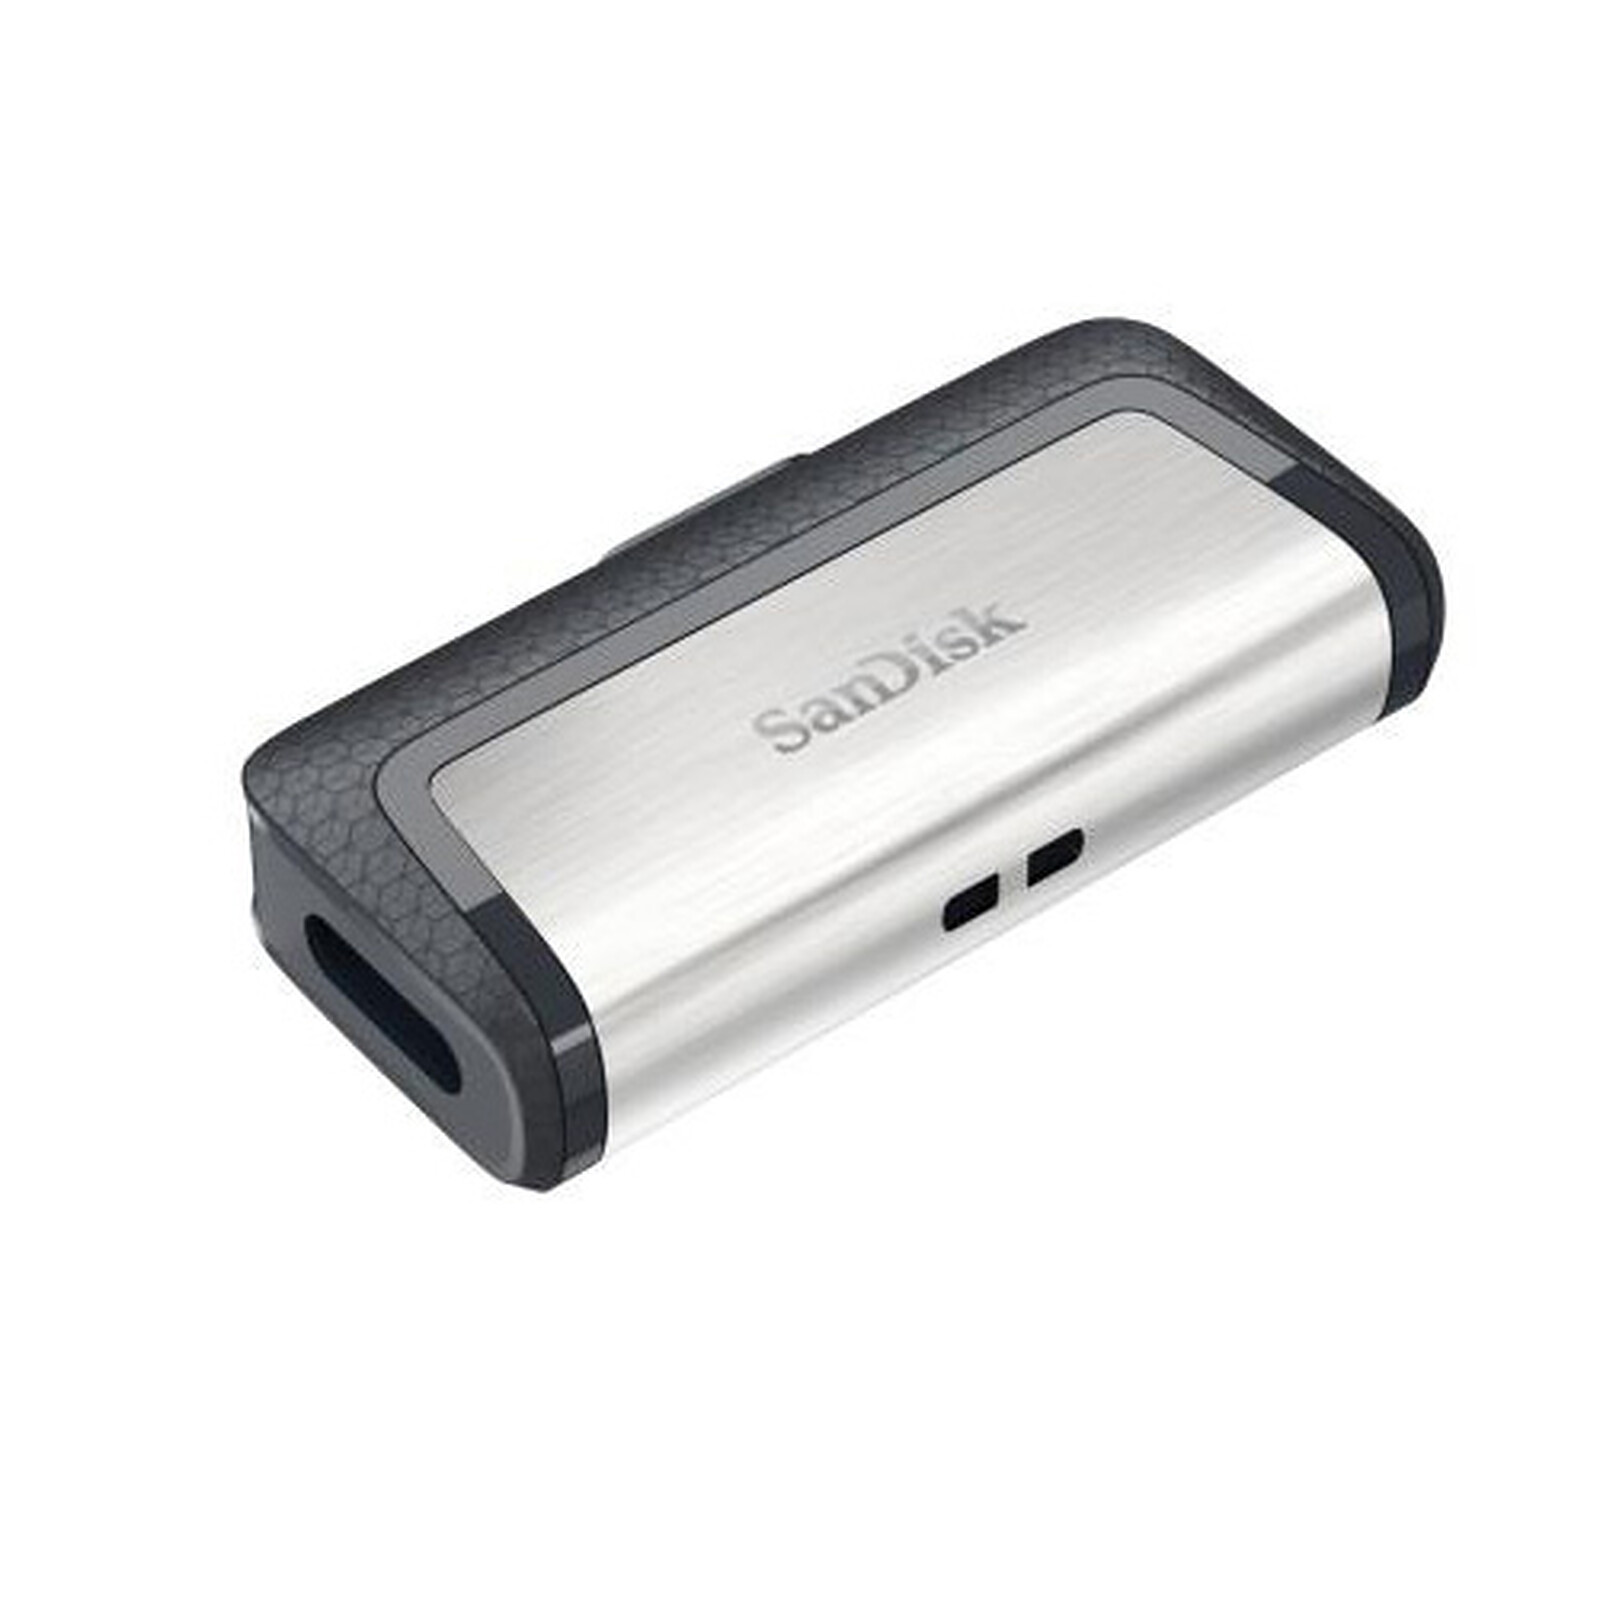 STOCKAGE. SanDisk Connect : une clé USB sans fil pas très rapide mais bien  pratique